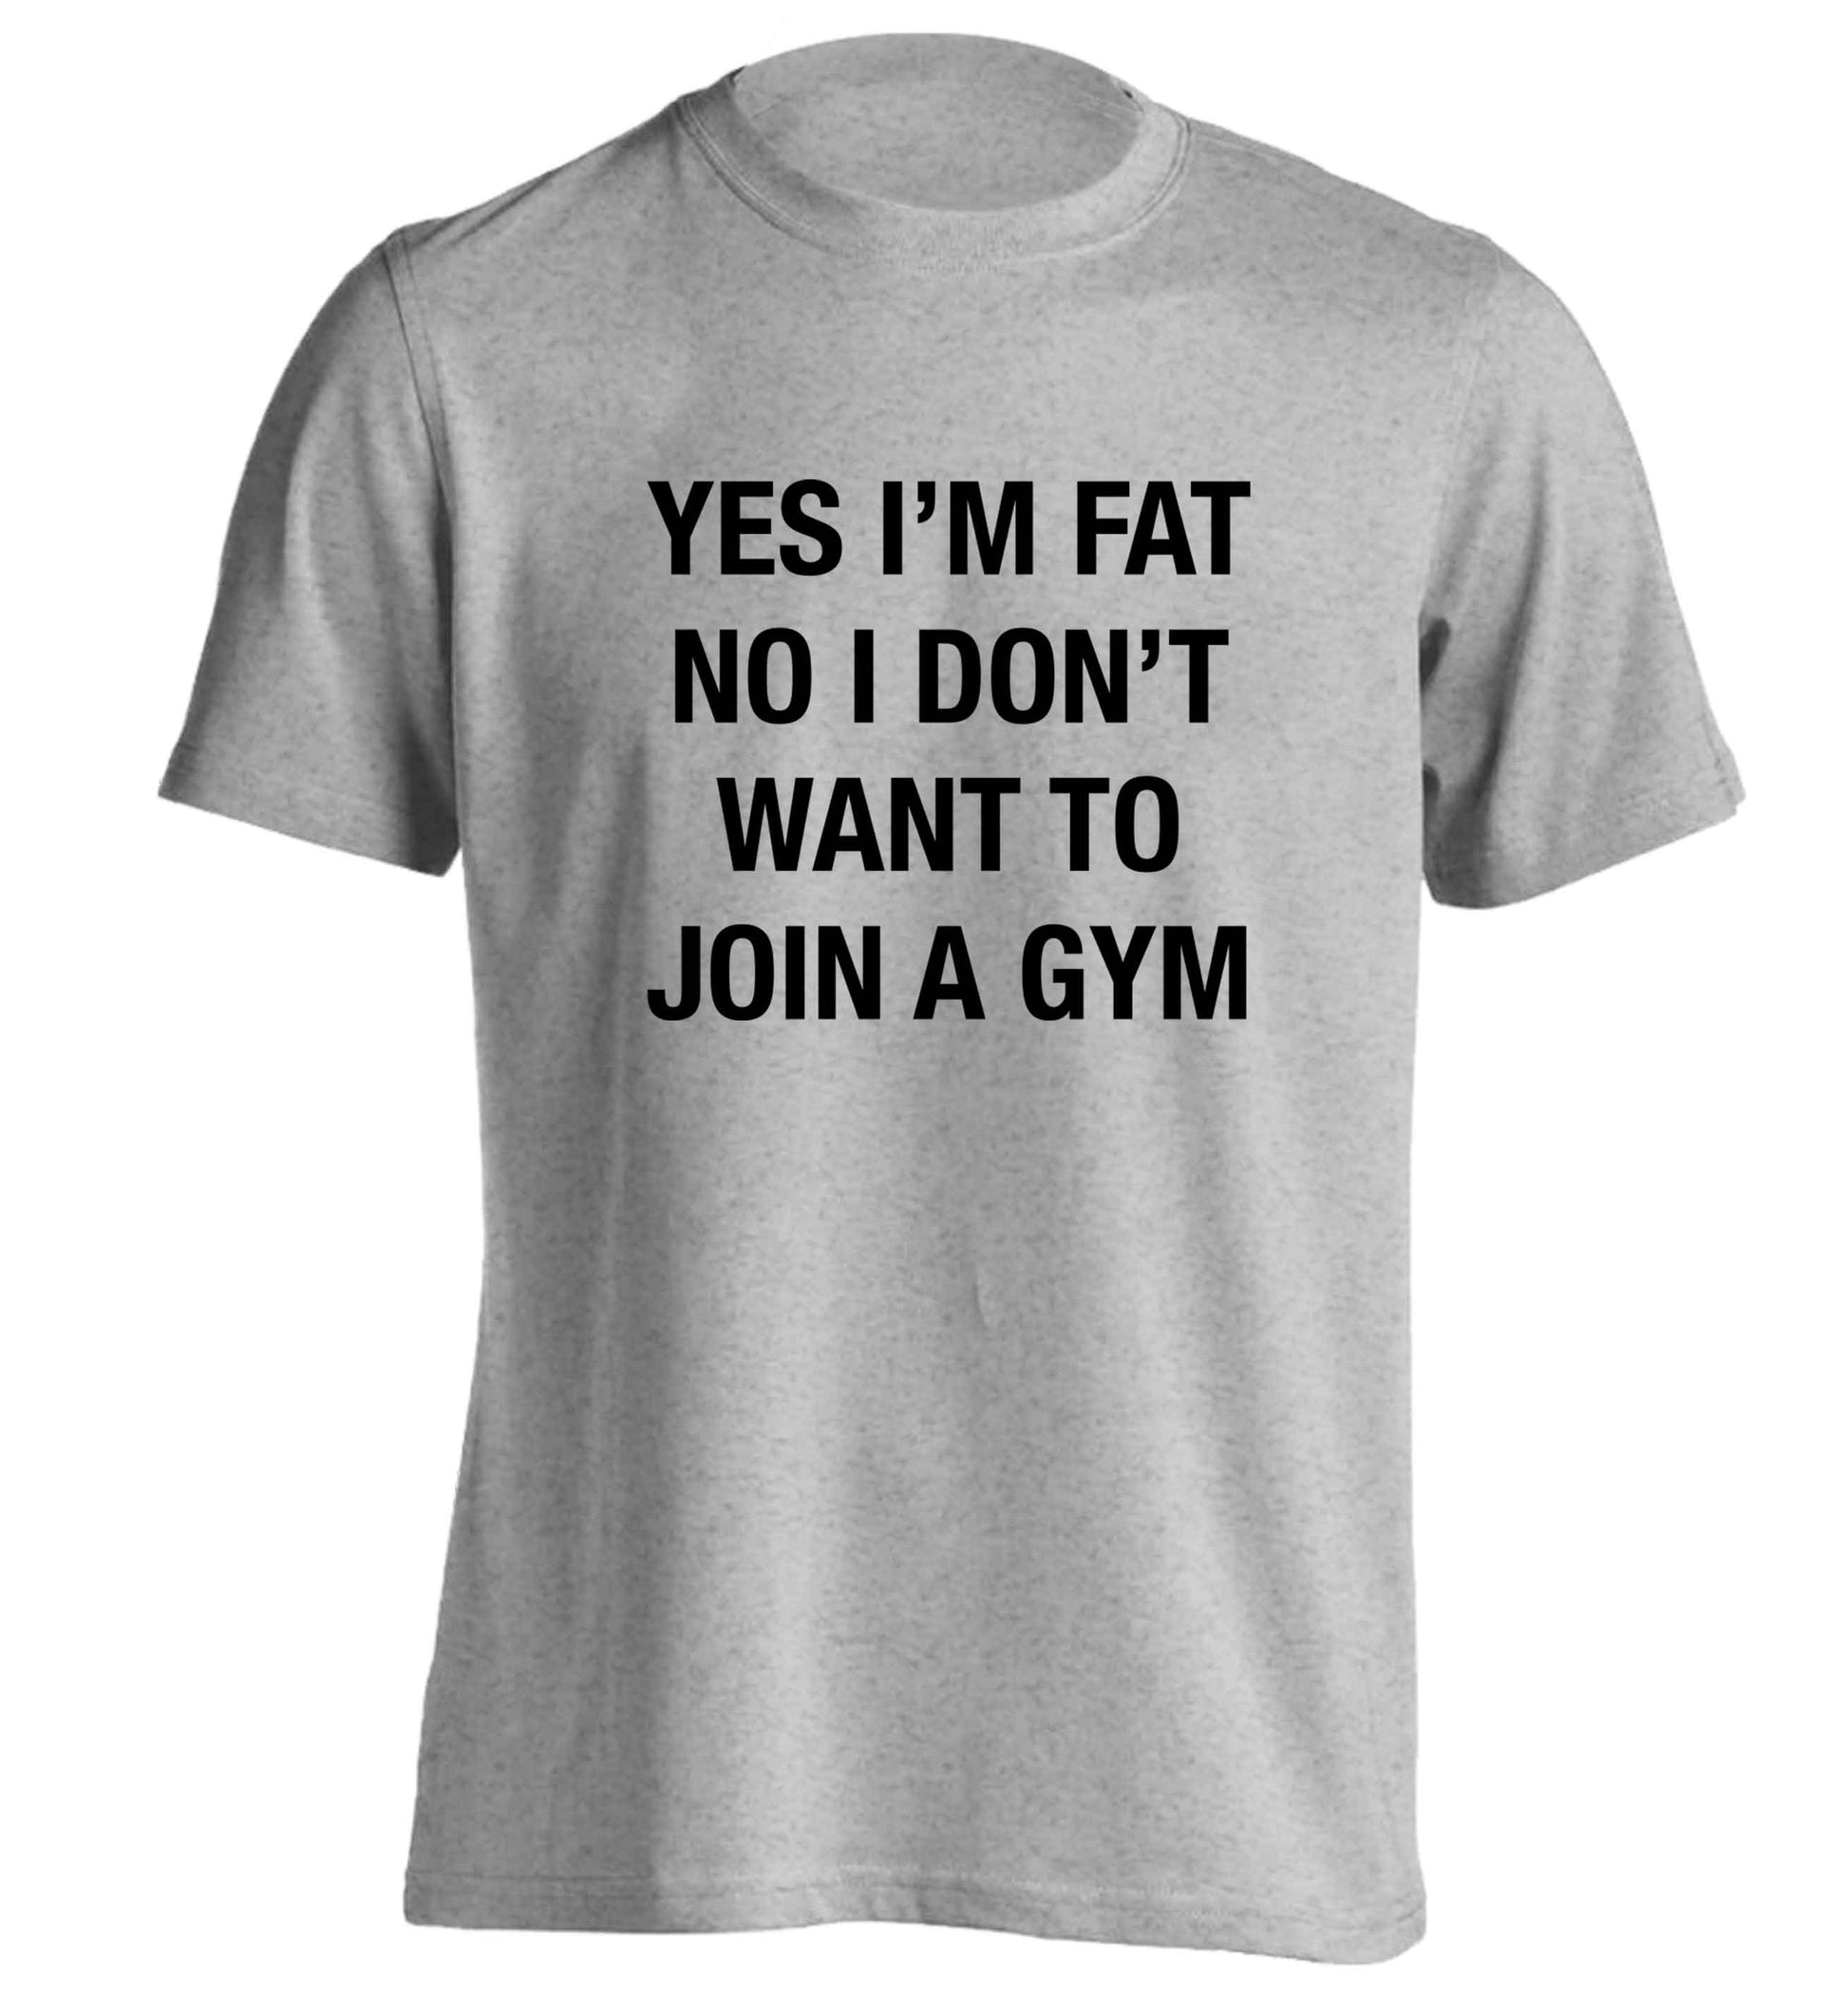 Yes I'm fat, no I don't want to go to the gym adults unisex grey Tshirt 2XL